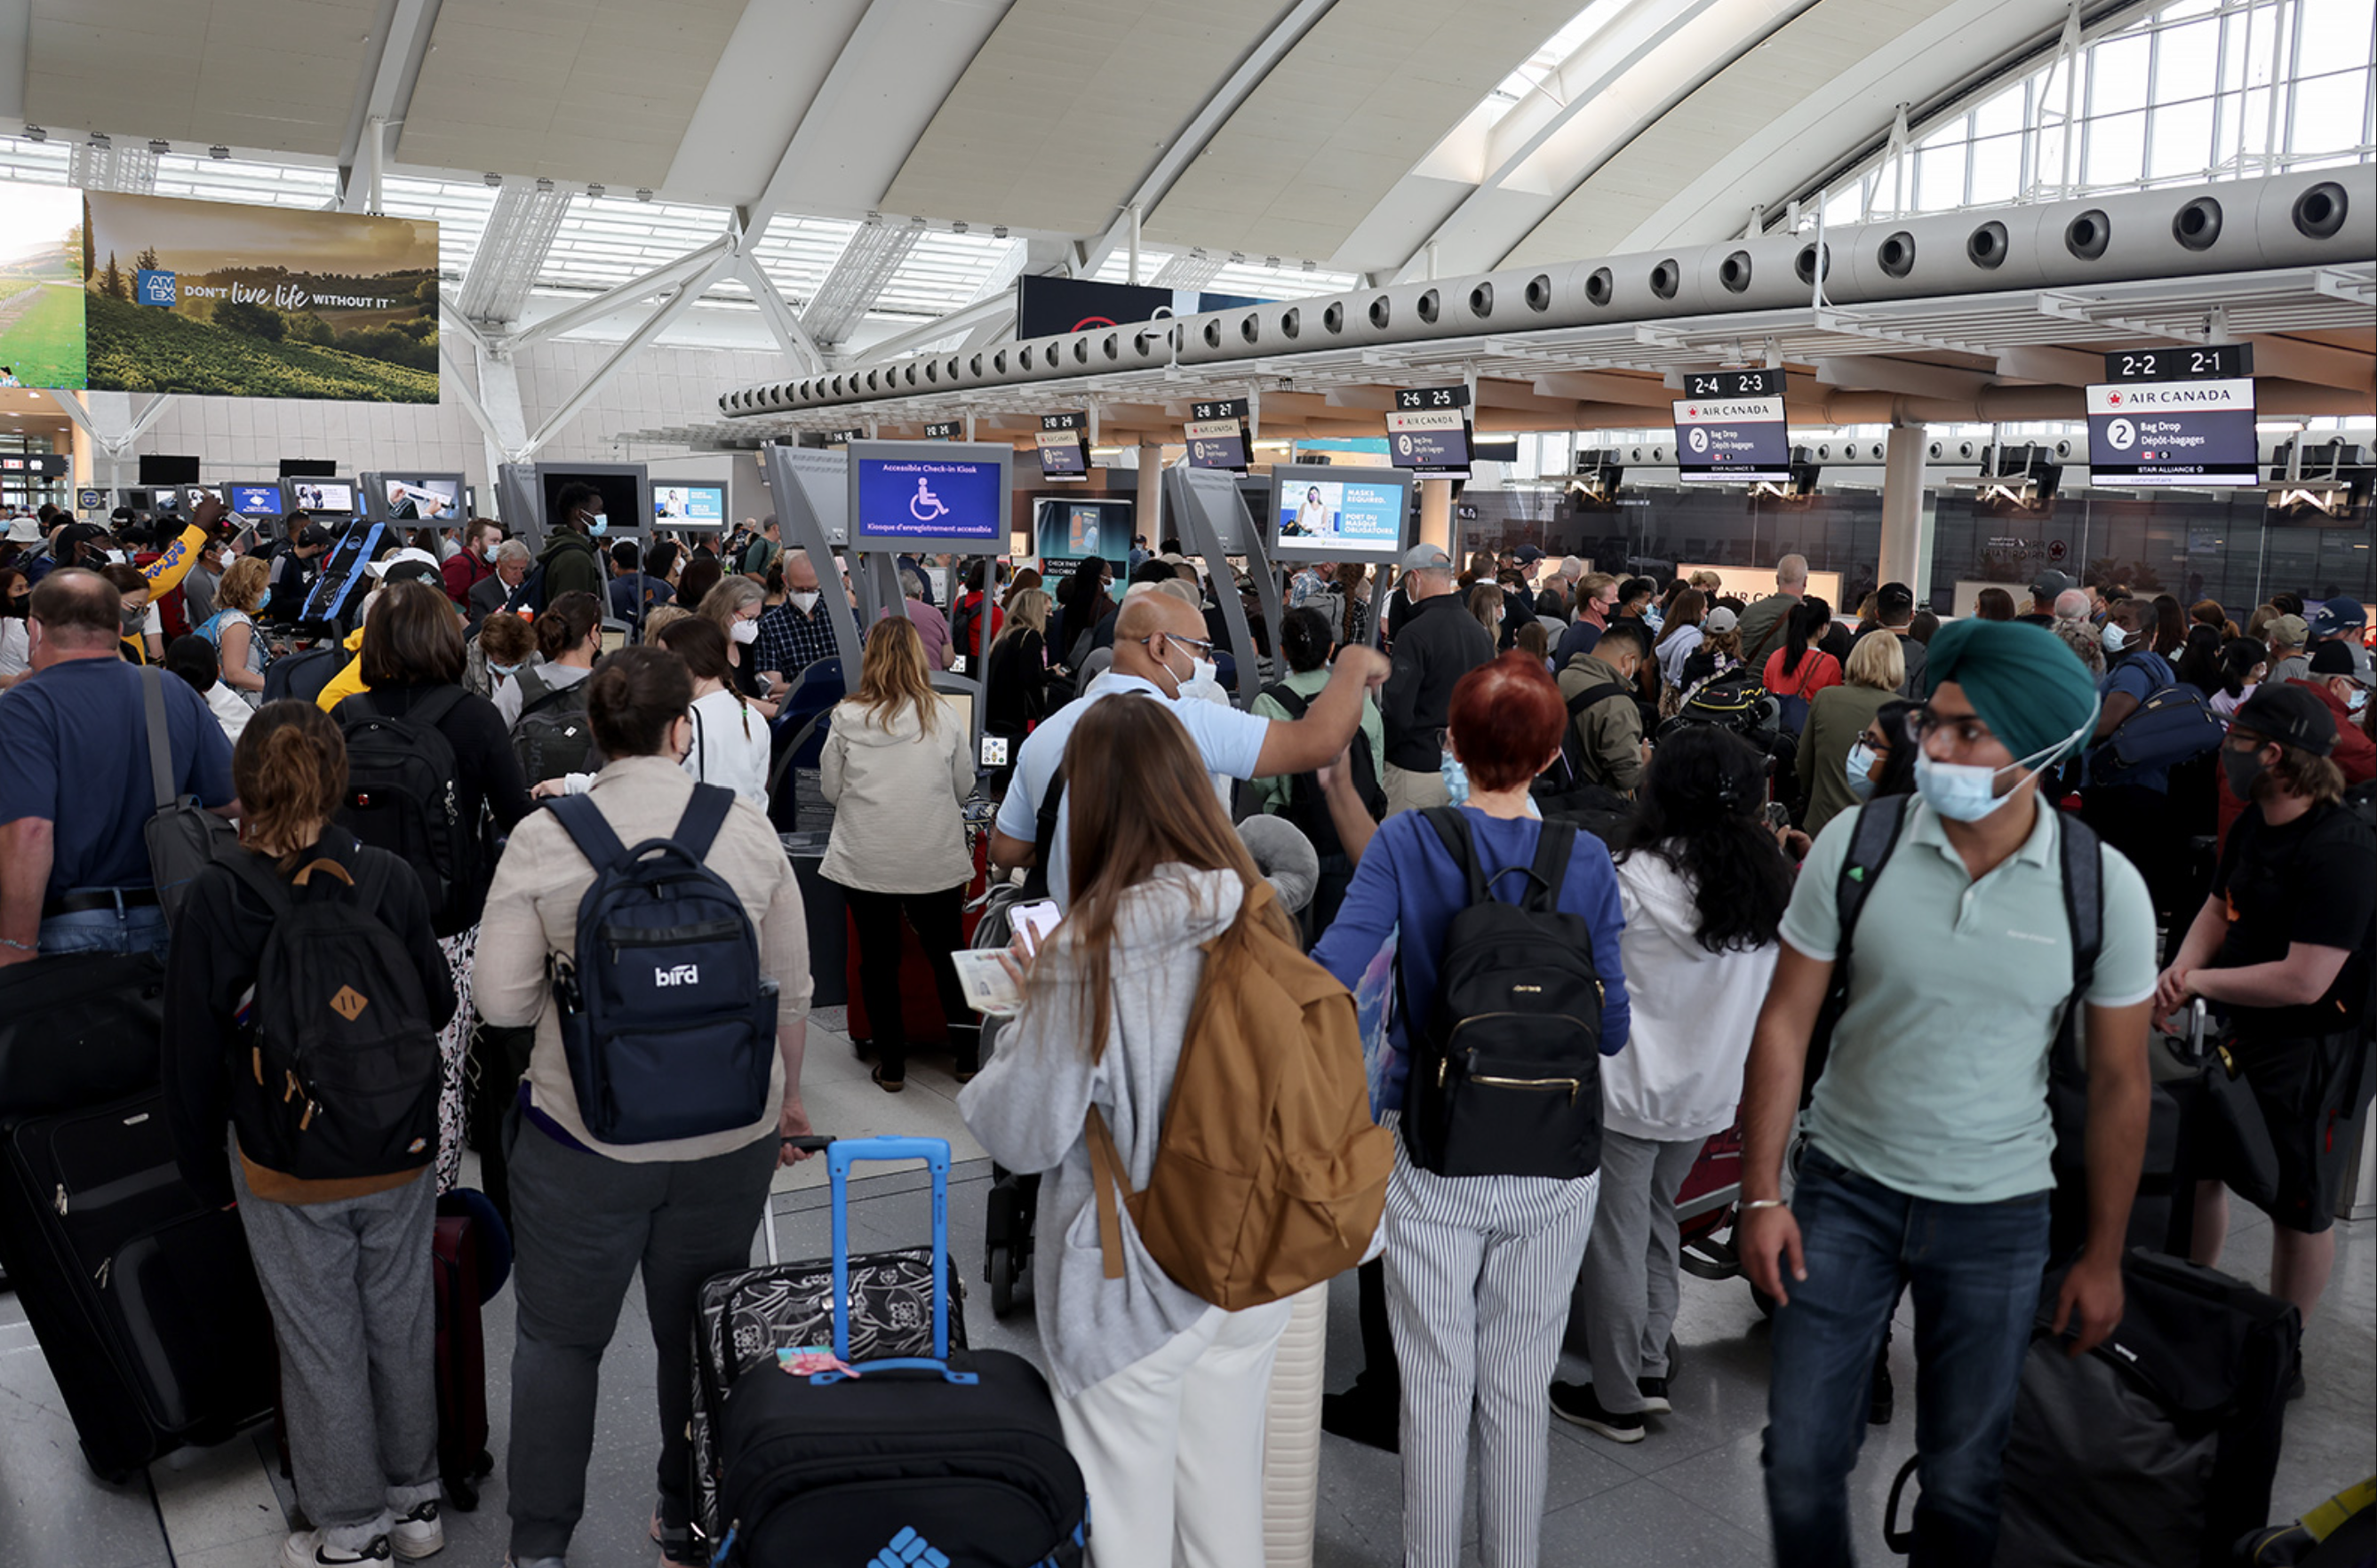 فرودگاه پیرسون تورنتو از نظر تاخیر به عنوان بدترین فرودگاه جهان رتبه بندی شد